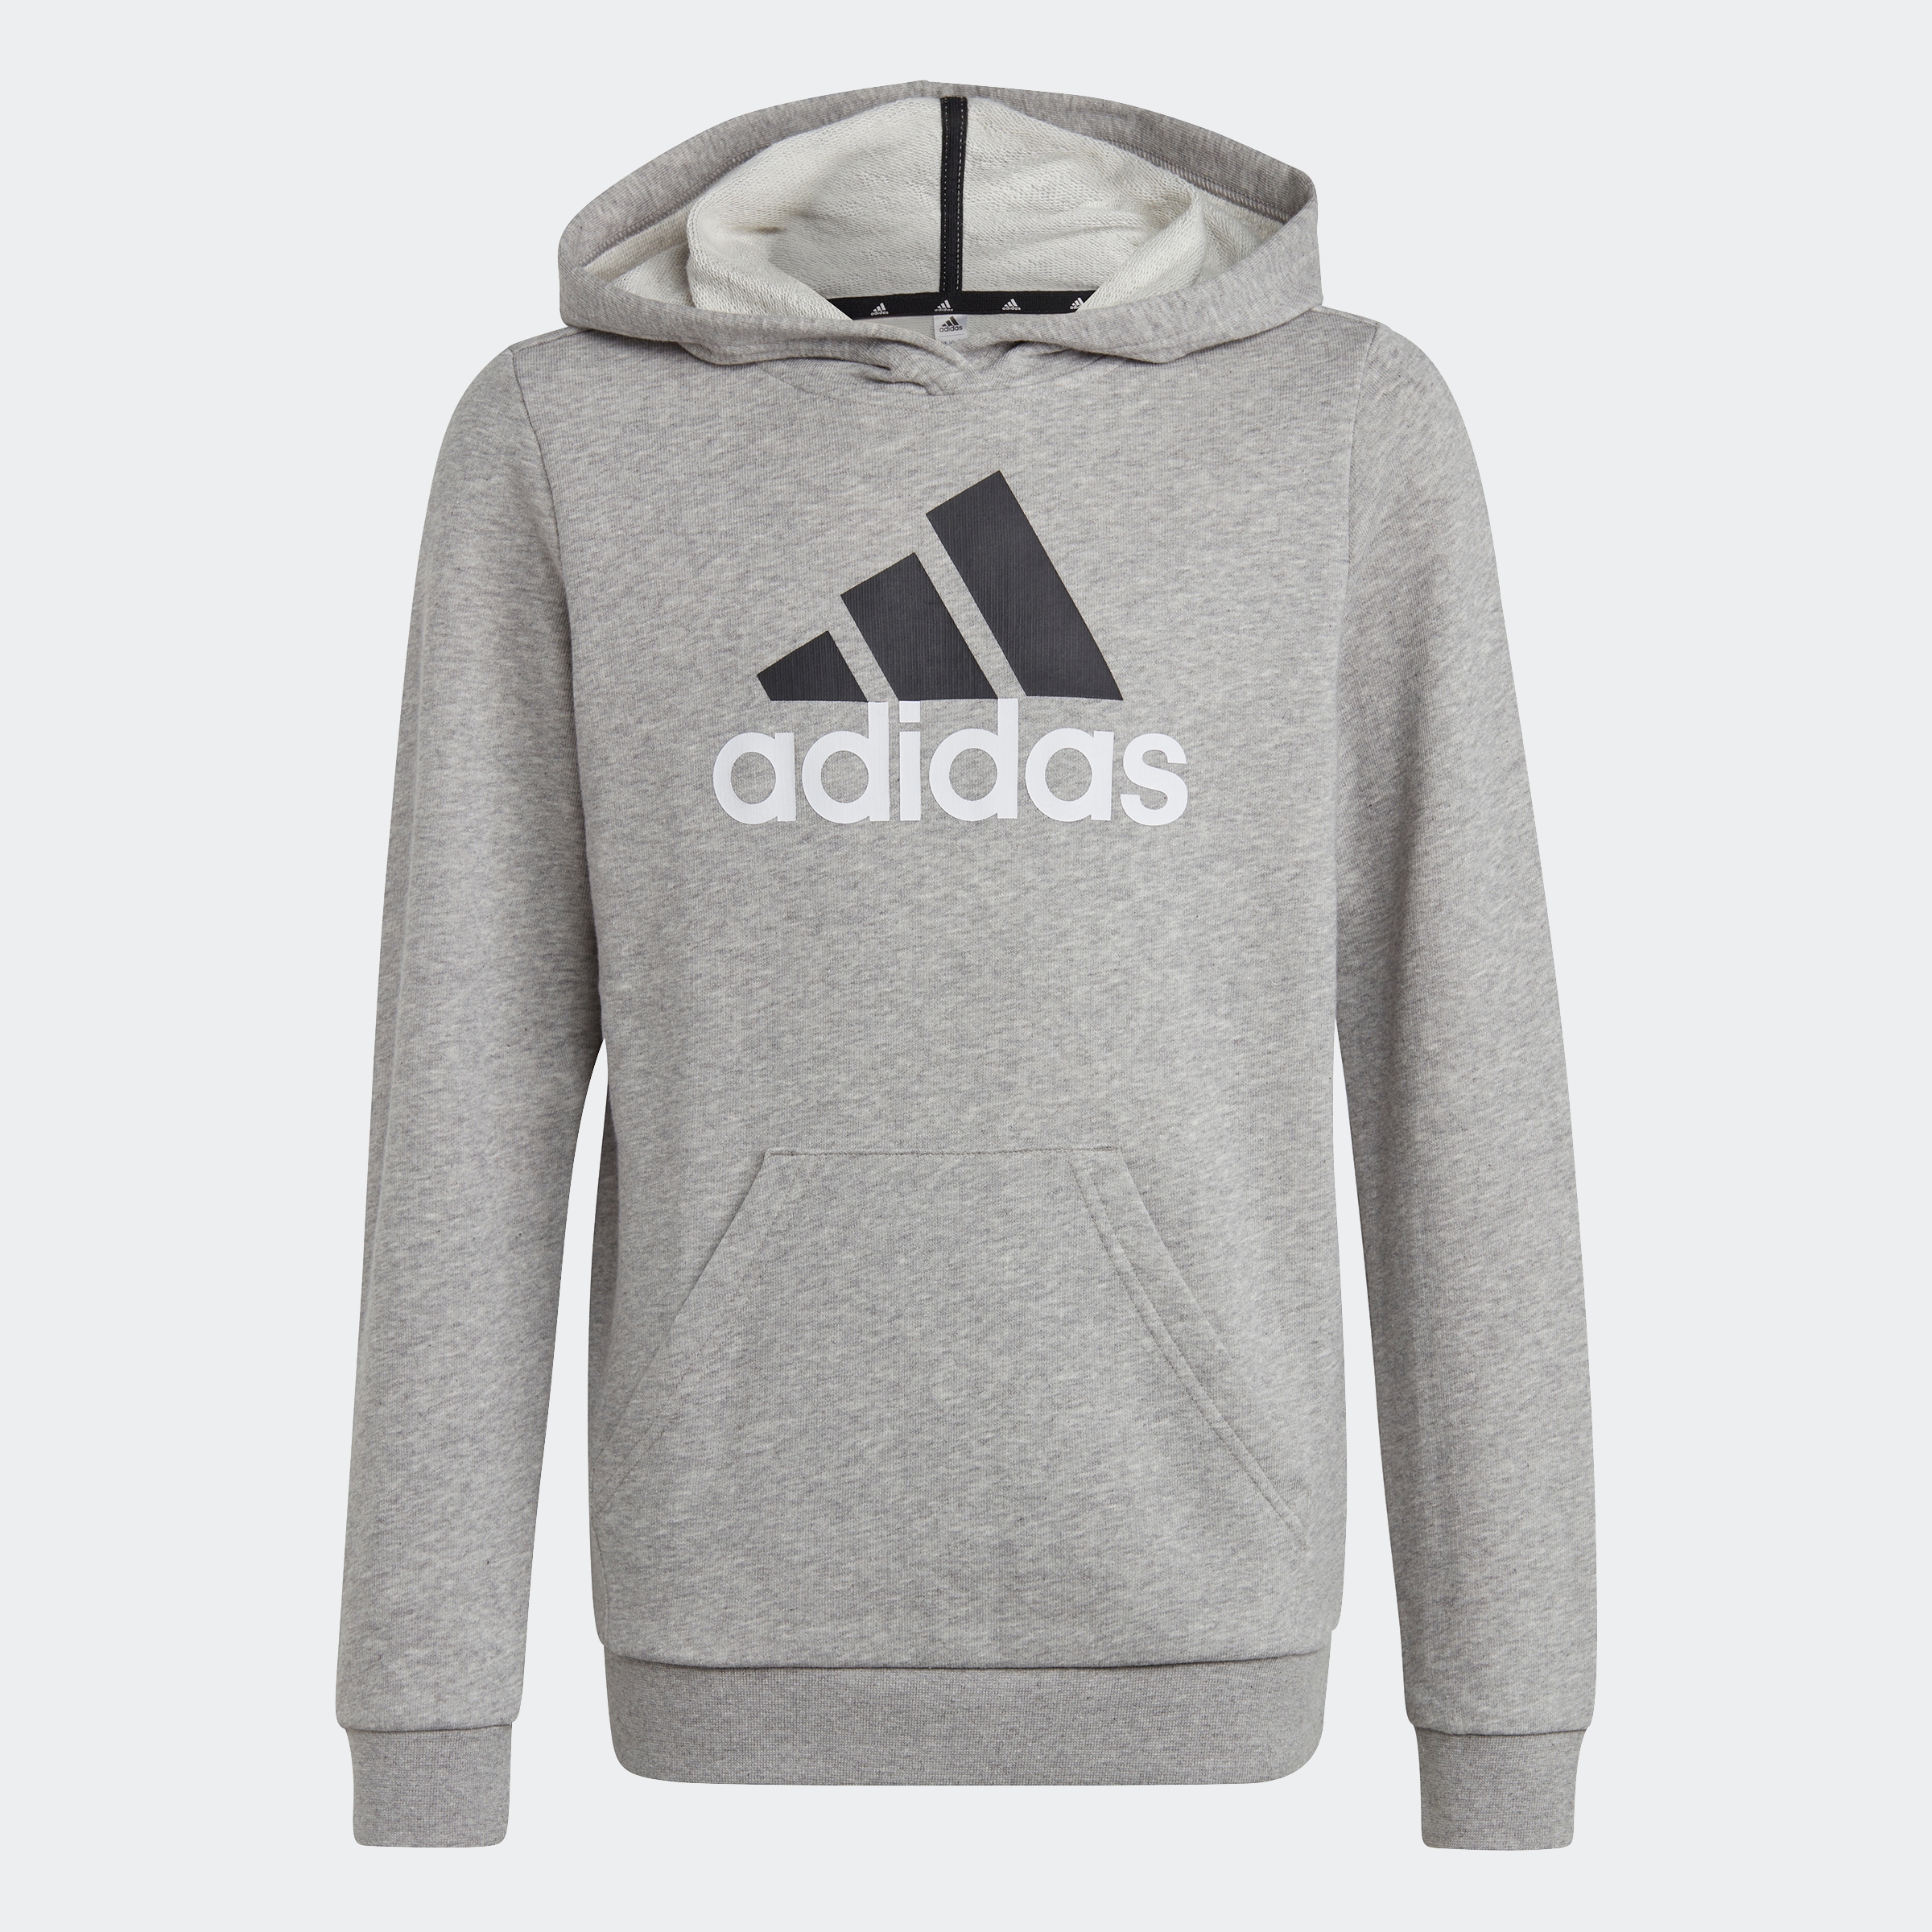 »U BL kaufen HOODIE« 2 Sweatshirt online adidas Sportswear